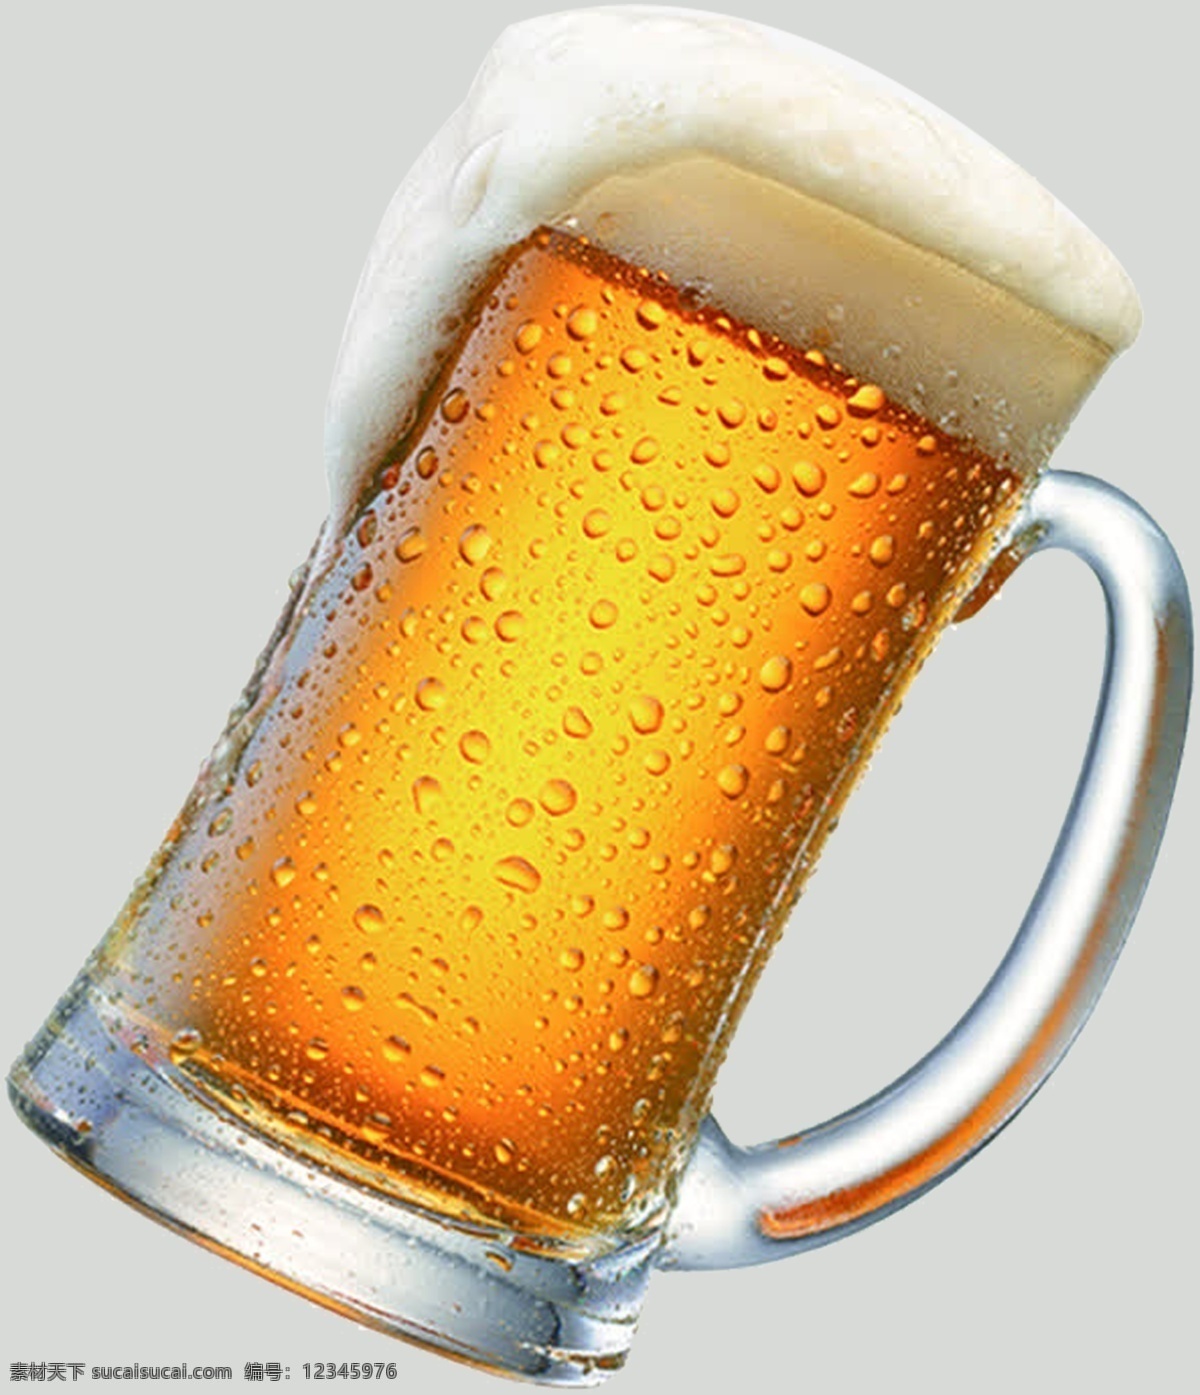 啤酒 啤酒免扣 免扣啤酒 大杯啤酒 扎啤 啤酒图片 免扣啤酒素材 啤酒免扣素材 平面设计 生活百科 餐饮美食